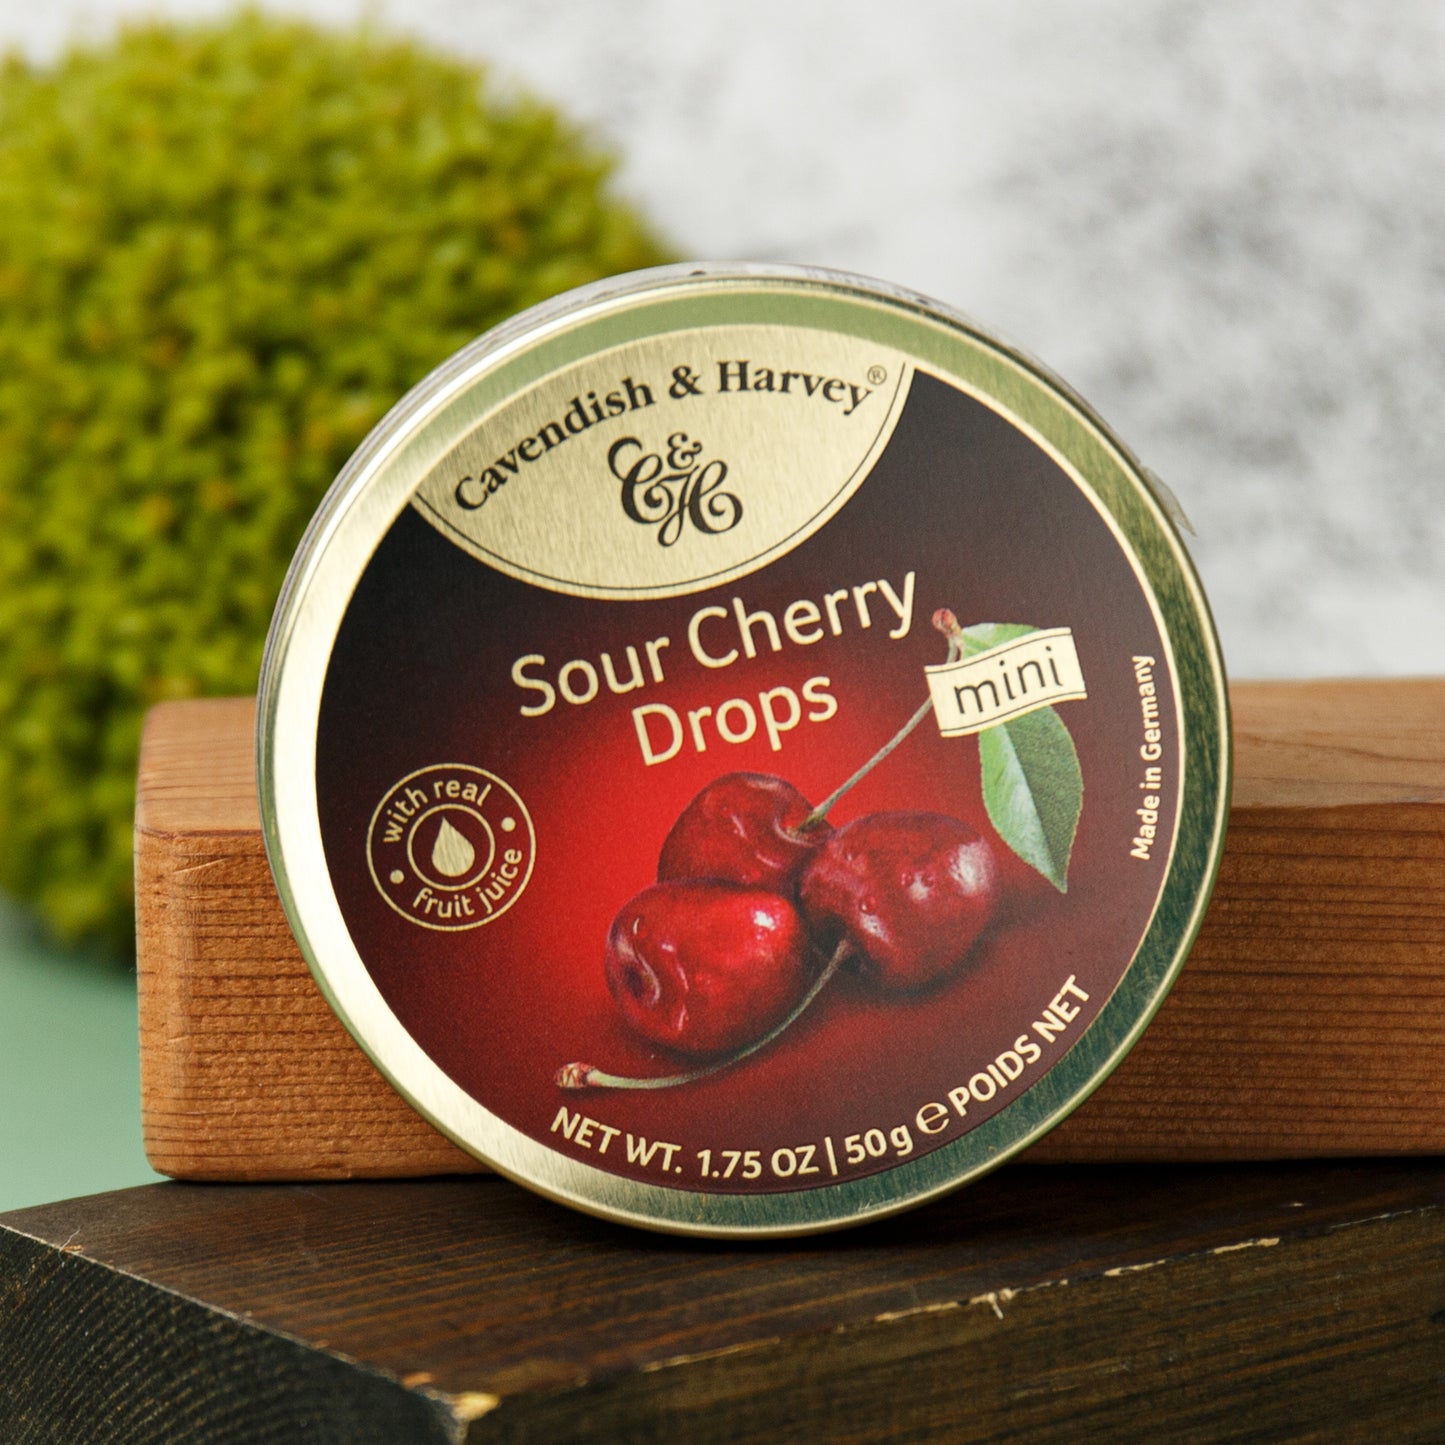 Cavendish & Harvey Candy Drops - Sour Cherry (1.75 oz) #10072426